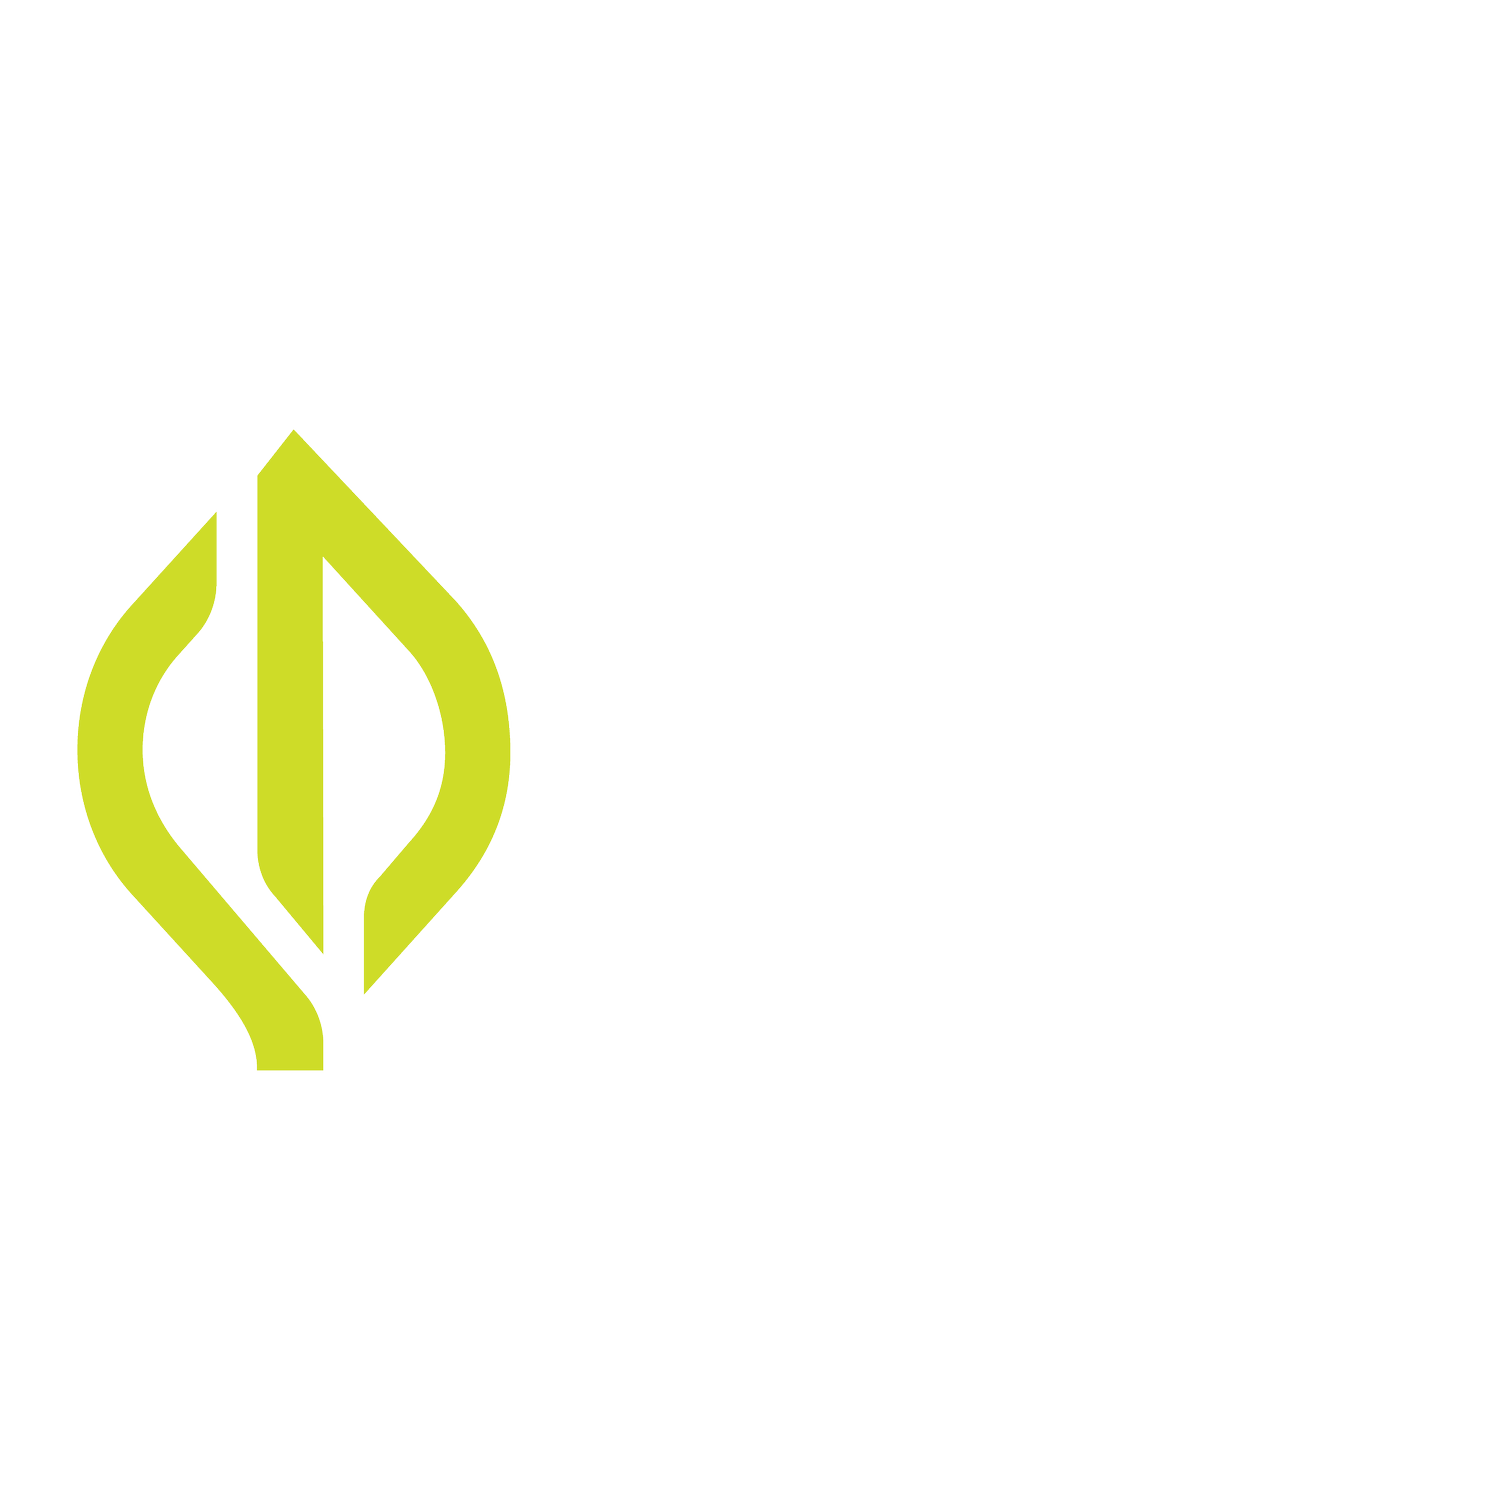 Chewacla Invasive Plant Working Group